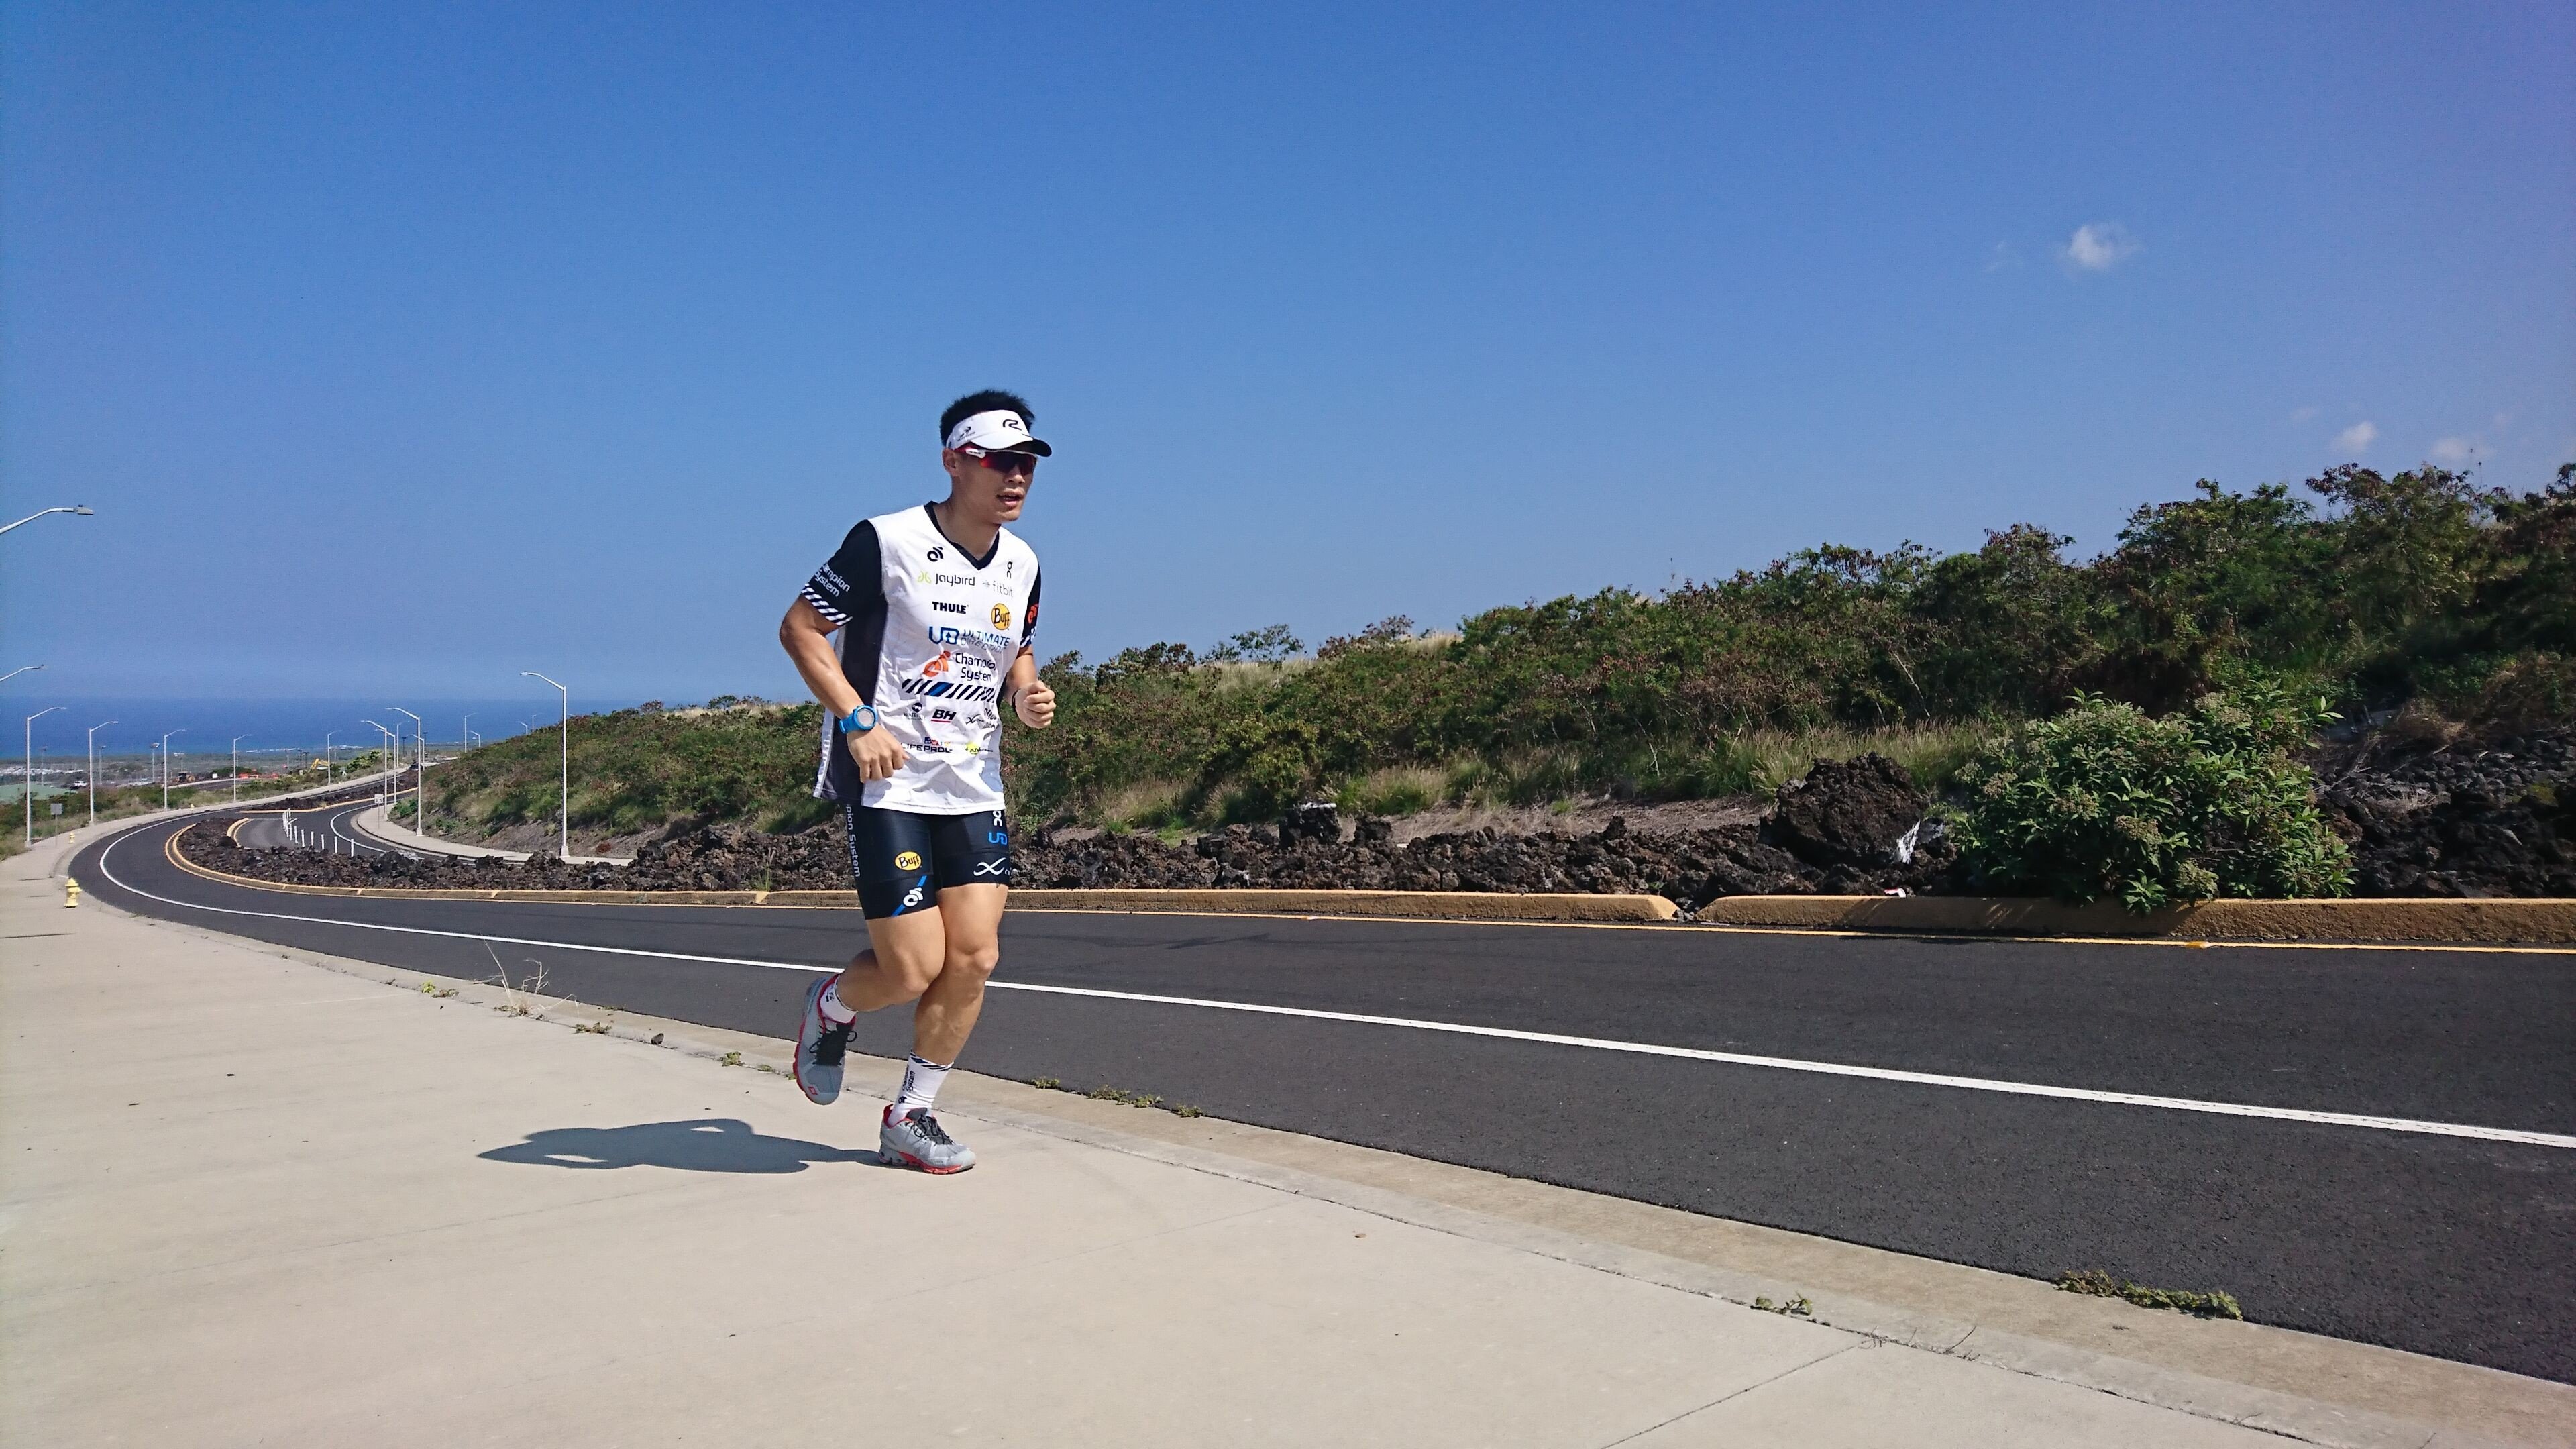 Hong Kong runner Wong Ho-fai has the whole road to himself as he runs in Hawaii. Photos: Wong Ho-fai